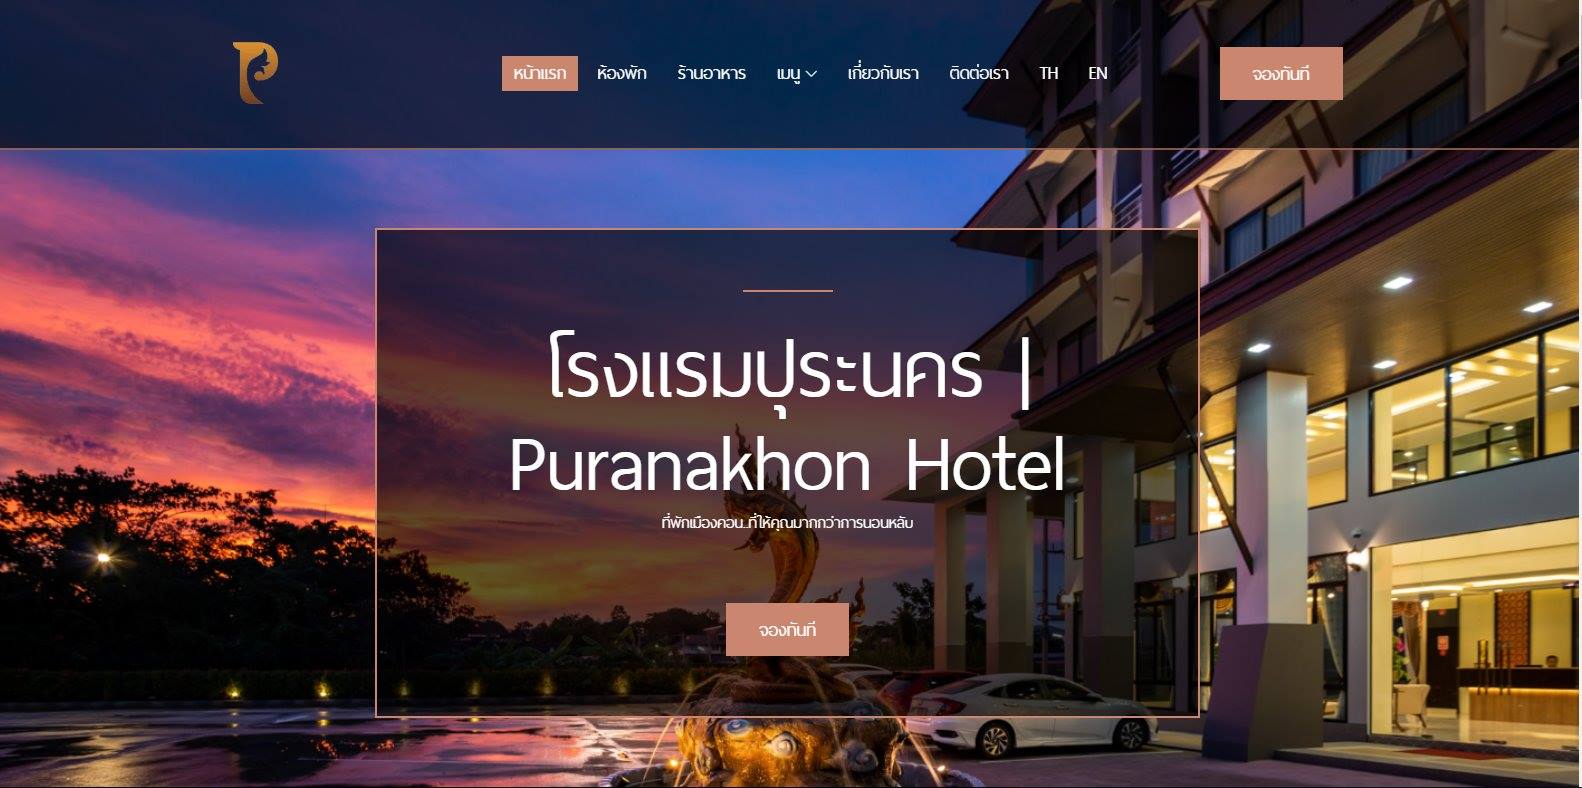  โรงแรมปุระนคร
https://puranakhon.com/
 รับทำเว็บไซต์,ภาคใต้,application,ios,android